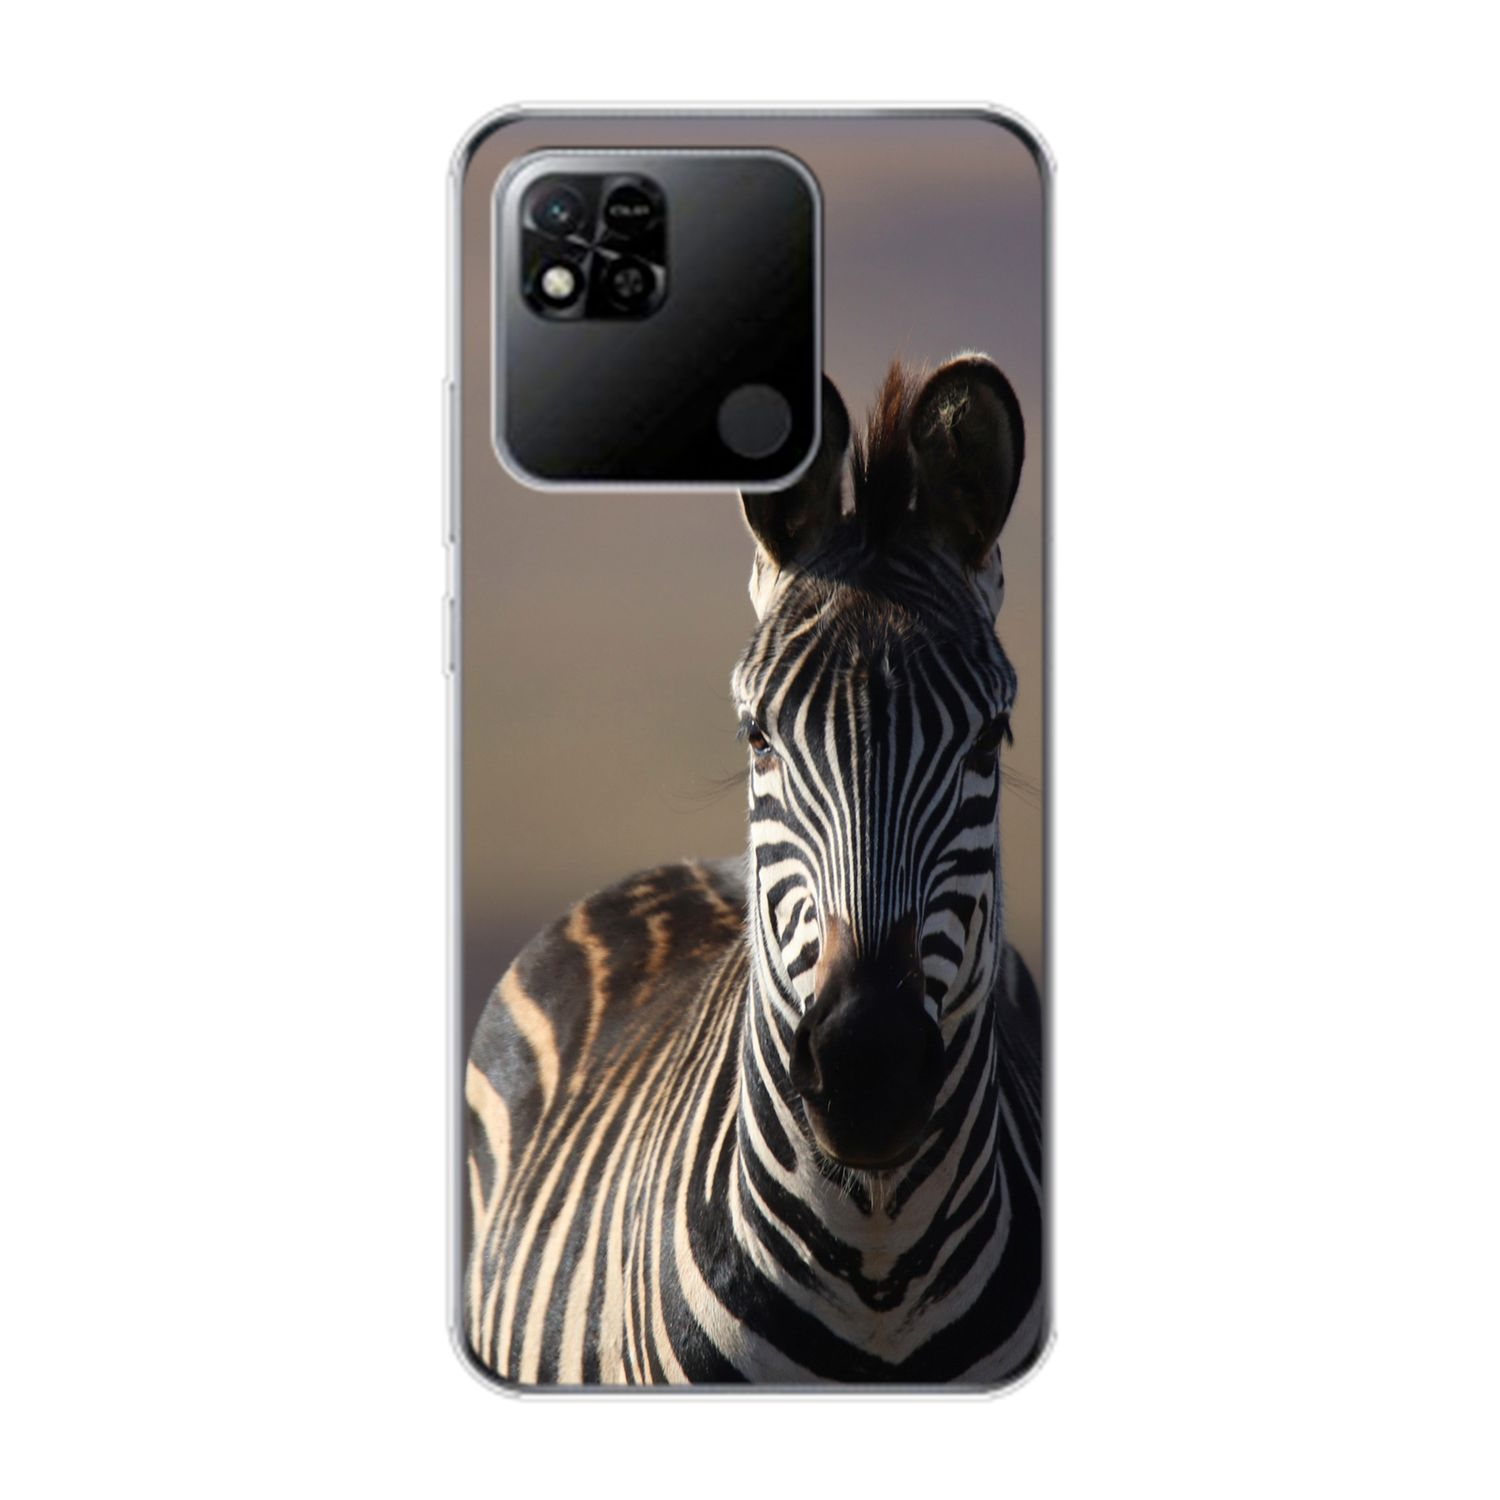 10A, Zebra Xiaomi, KÖNIG Case, Backcover, Redmi DESIGN